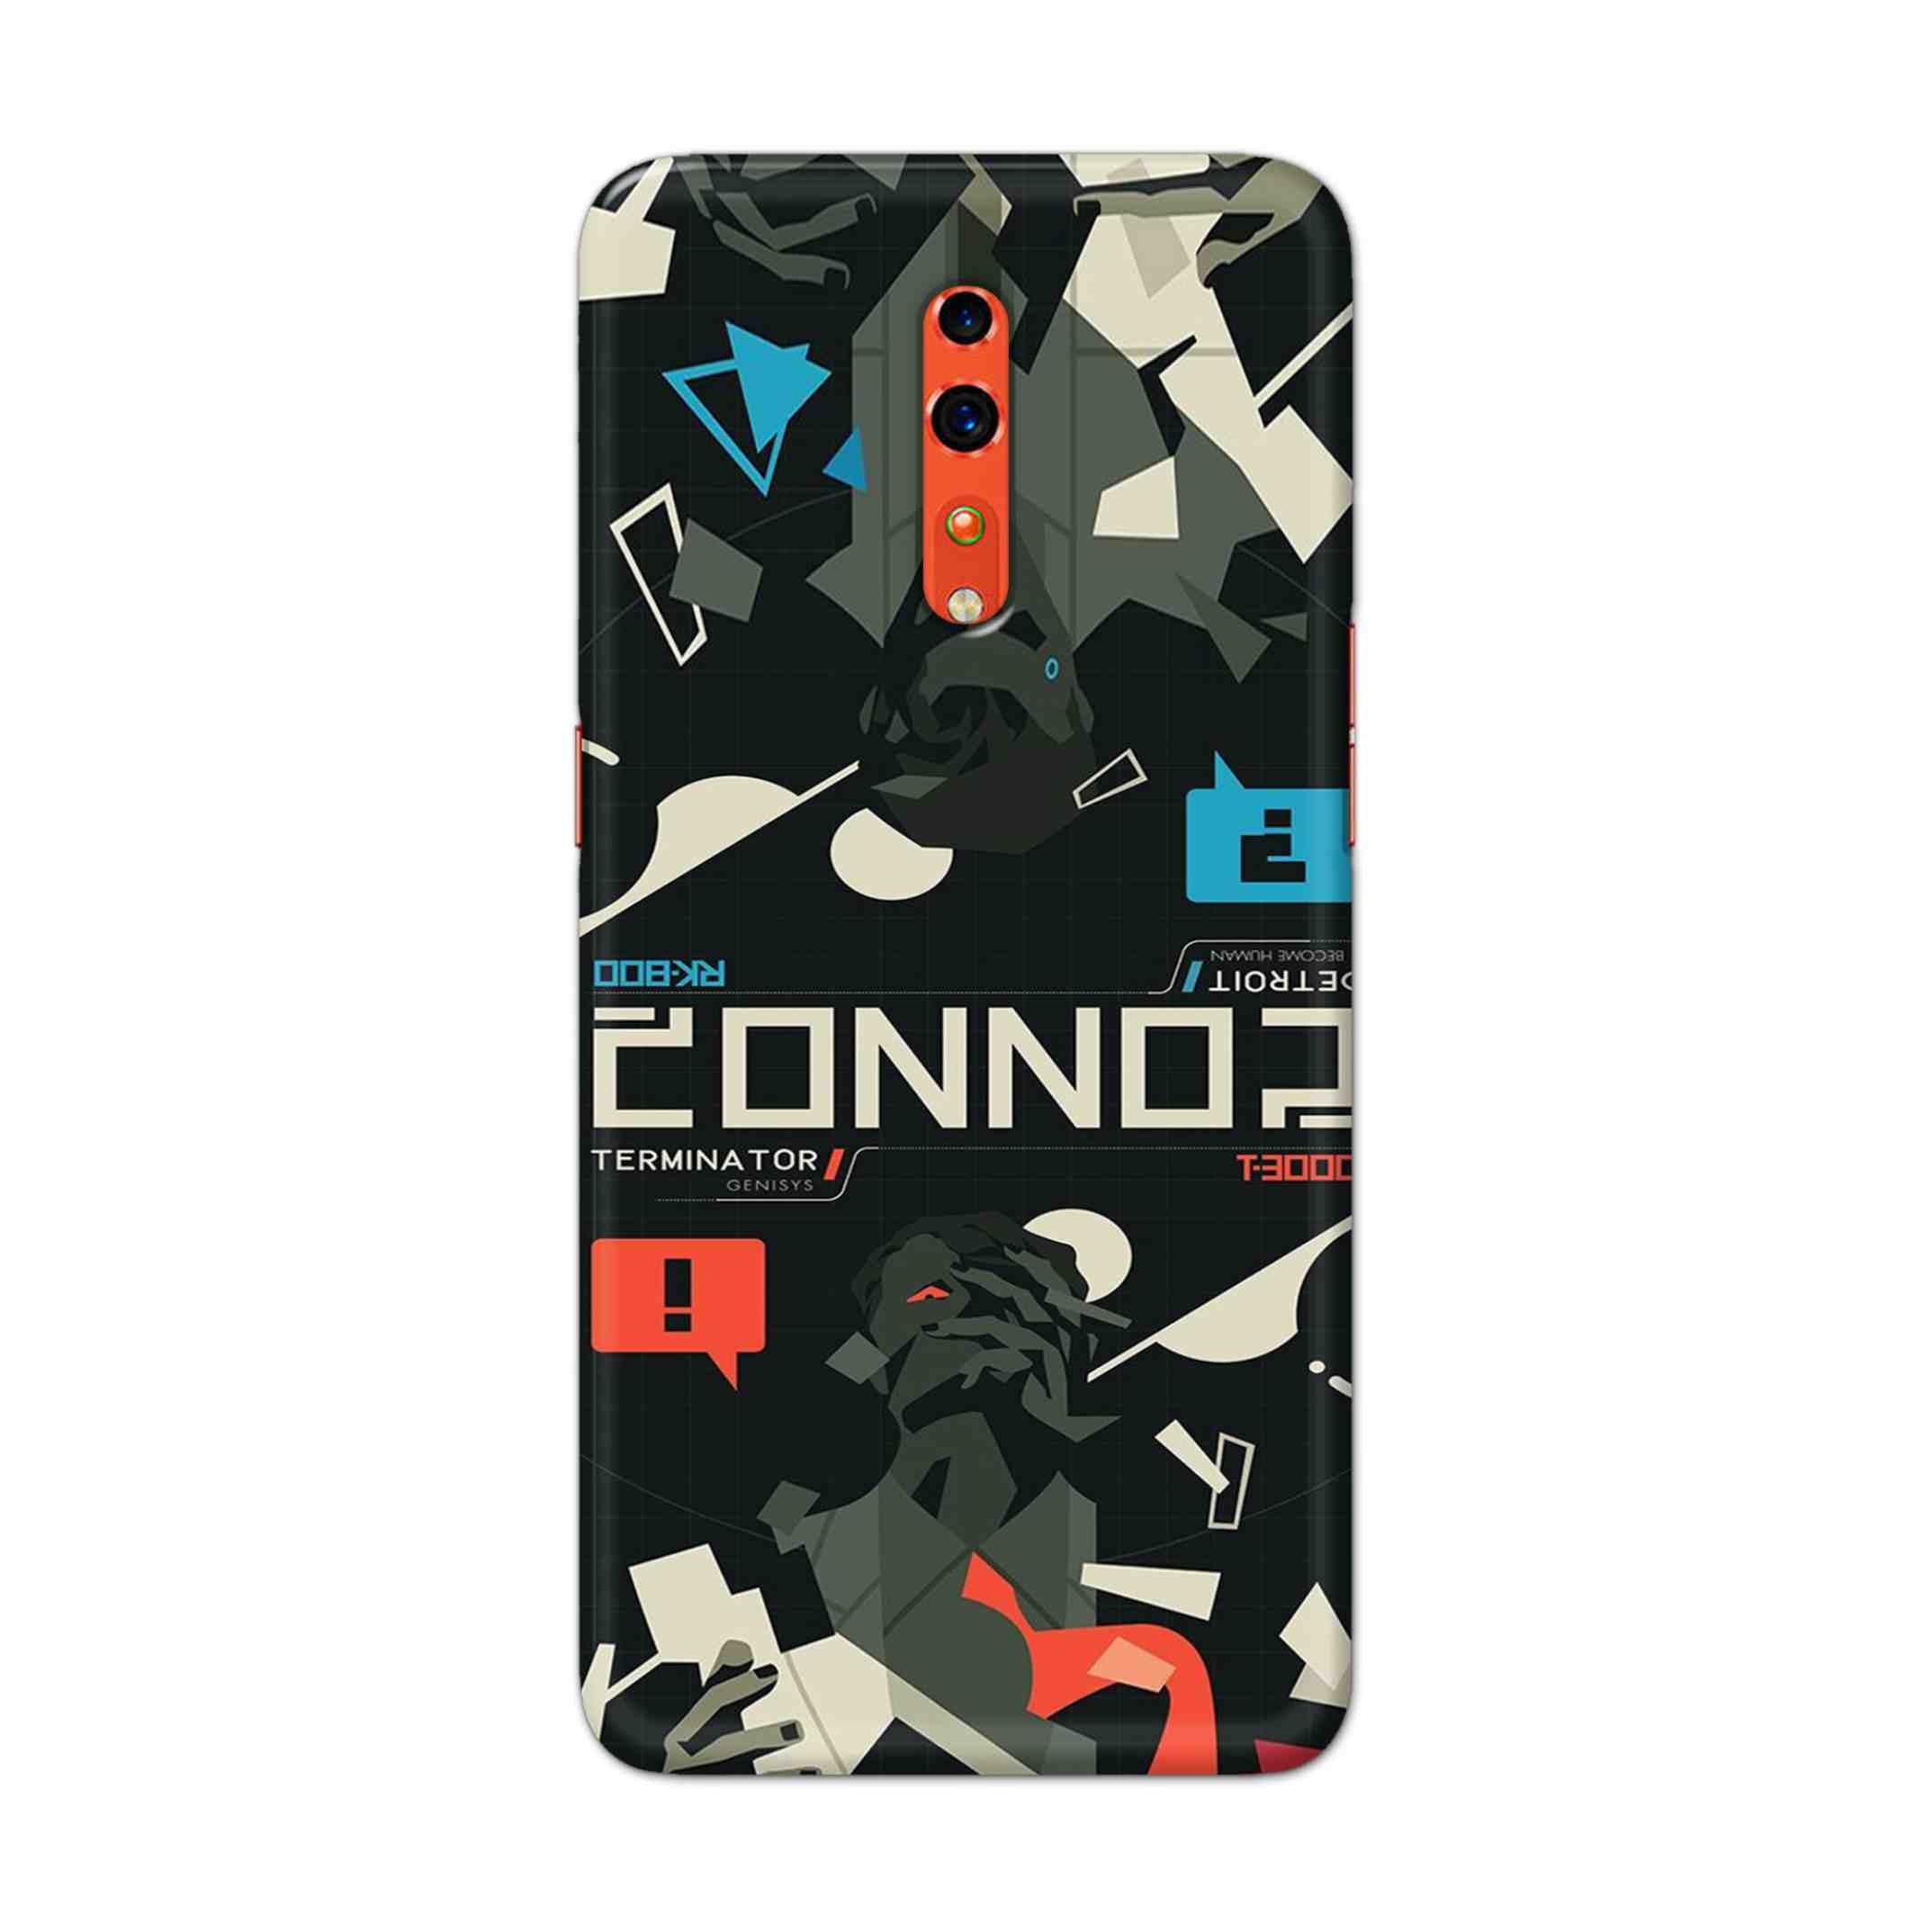 Buy Terminator Hard Back Mobile Phone Case Cover For OPPO Reno Z Online